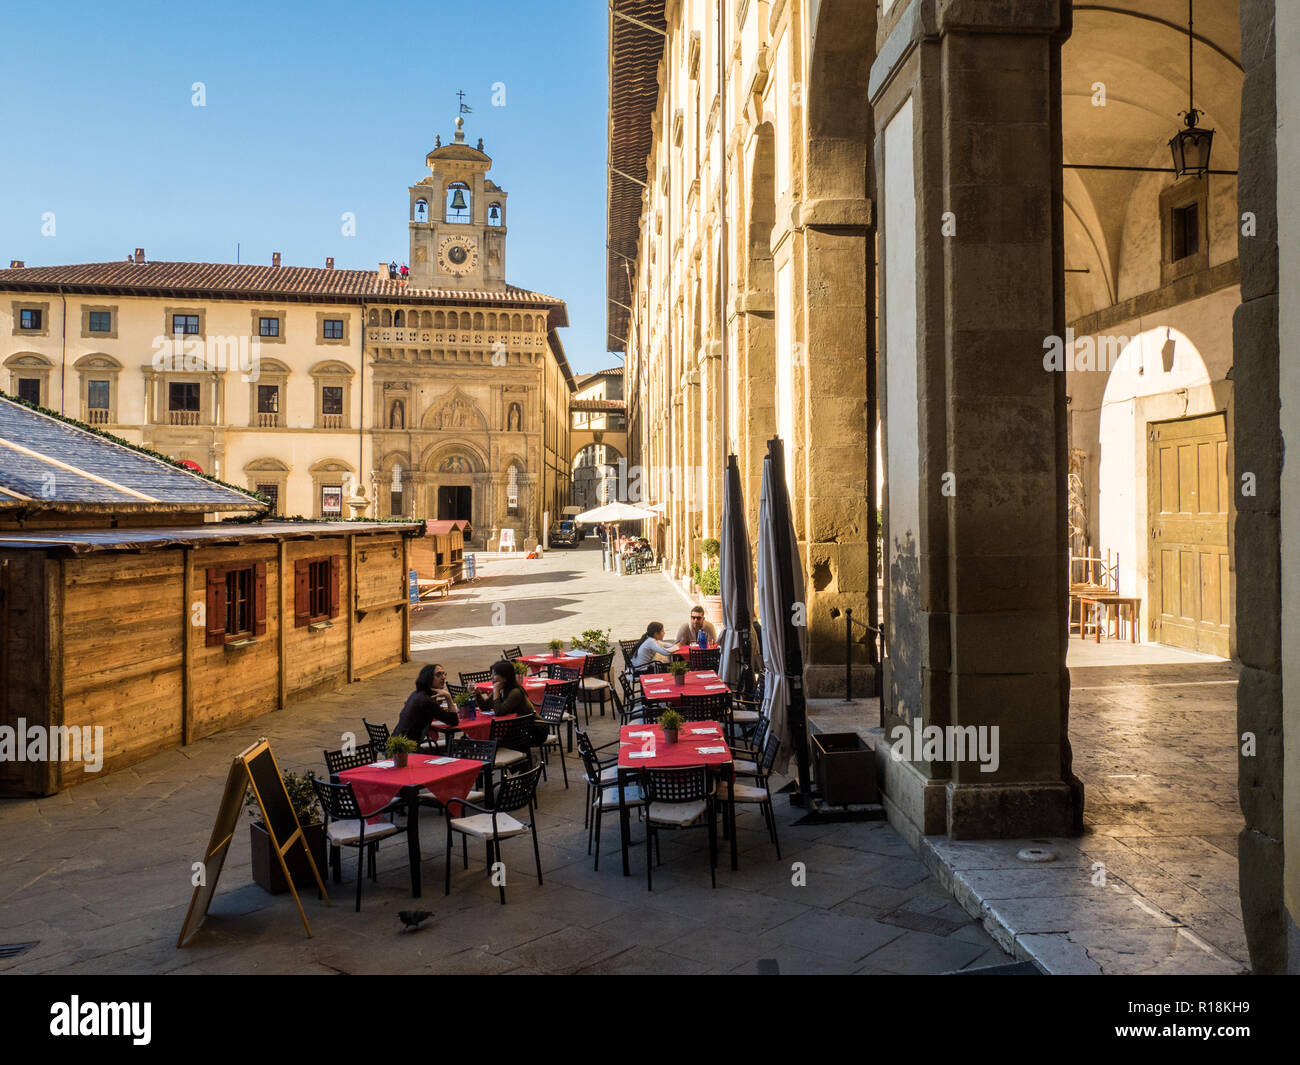 Die Piazza Grande in der Stadt Arezzo, Toskana, Italien, mit dem Glockenturm der gotische Palast der Laien Brüderlichkeit & Holz Weihnachten Marktstände. Stockfoto